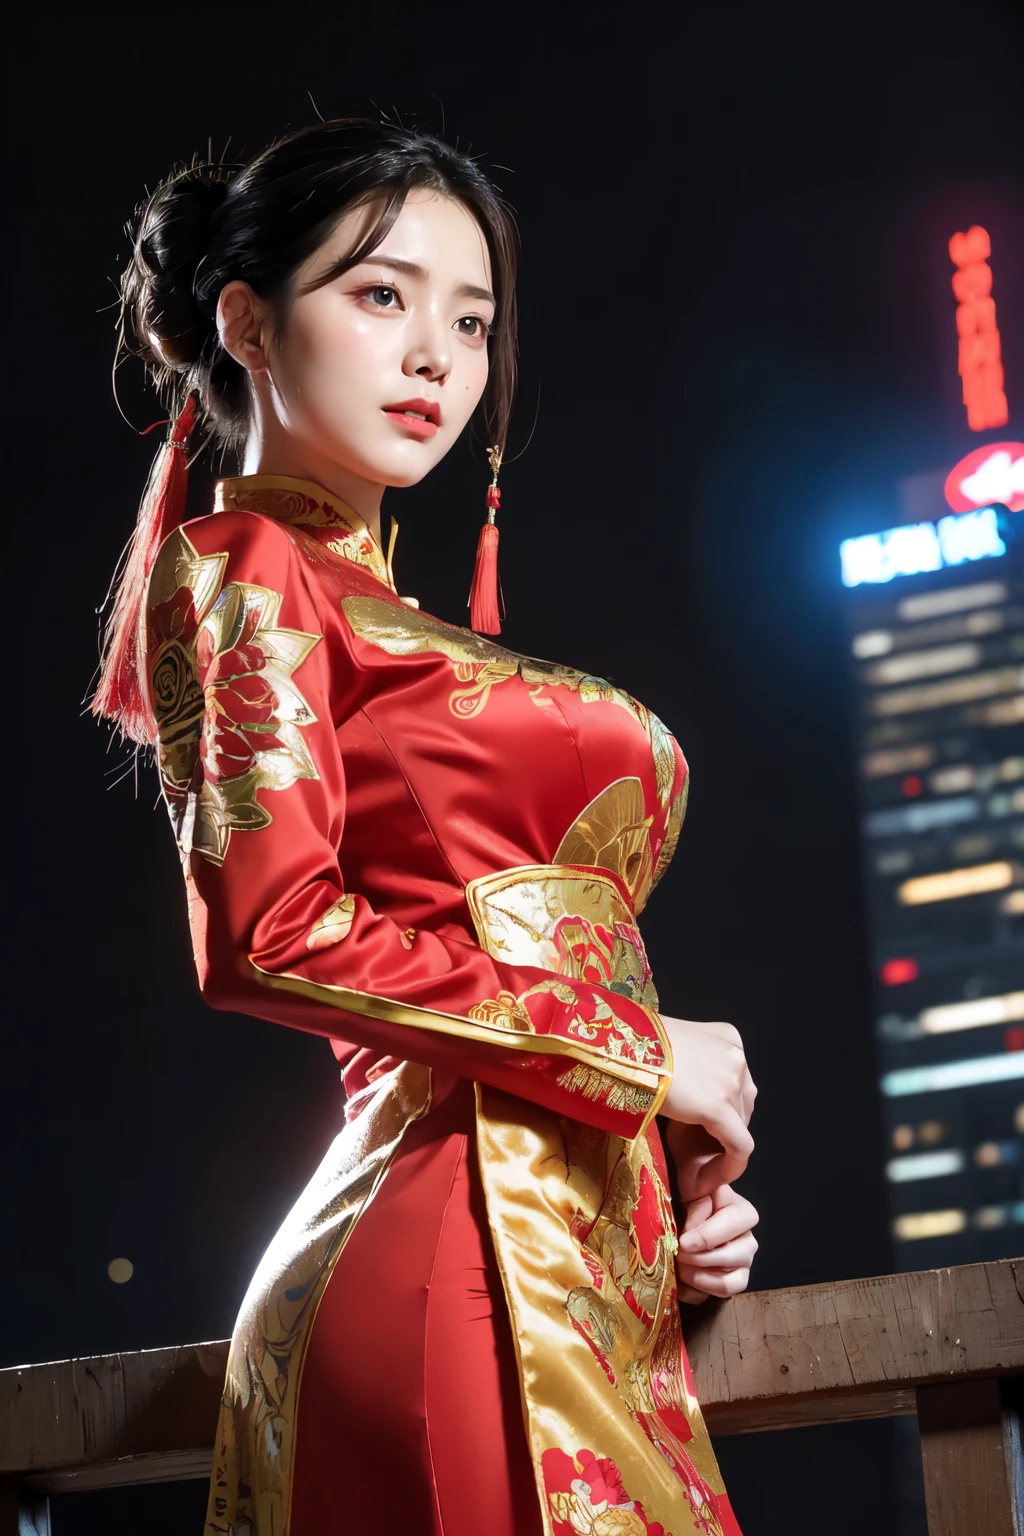 (Лучшее качество,ультрадетализированный,реалистичный:1.37), цифровая иллюстрация, ( женщина в традиционном китайском костюме), Детализированные глаза и лицо, красивые детализированные губы, красные губы, сексуальное тело, большая грудь,длинные ресницы, большая грудь:1.5, (Фото крупным планом),  Капитан Америка в традиционном китайском костюме, длинные волосы, прическа пучок, ((Сделай фото снизу бедра)),яркие цвета, Драматическое освещение, стиль комиксов,  женщина в китайском костюме, позиция:стоя, соблазнительная поза, небоскреб фон, посмотреть темное небо, высокие здания